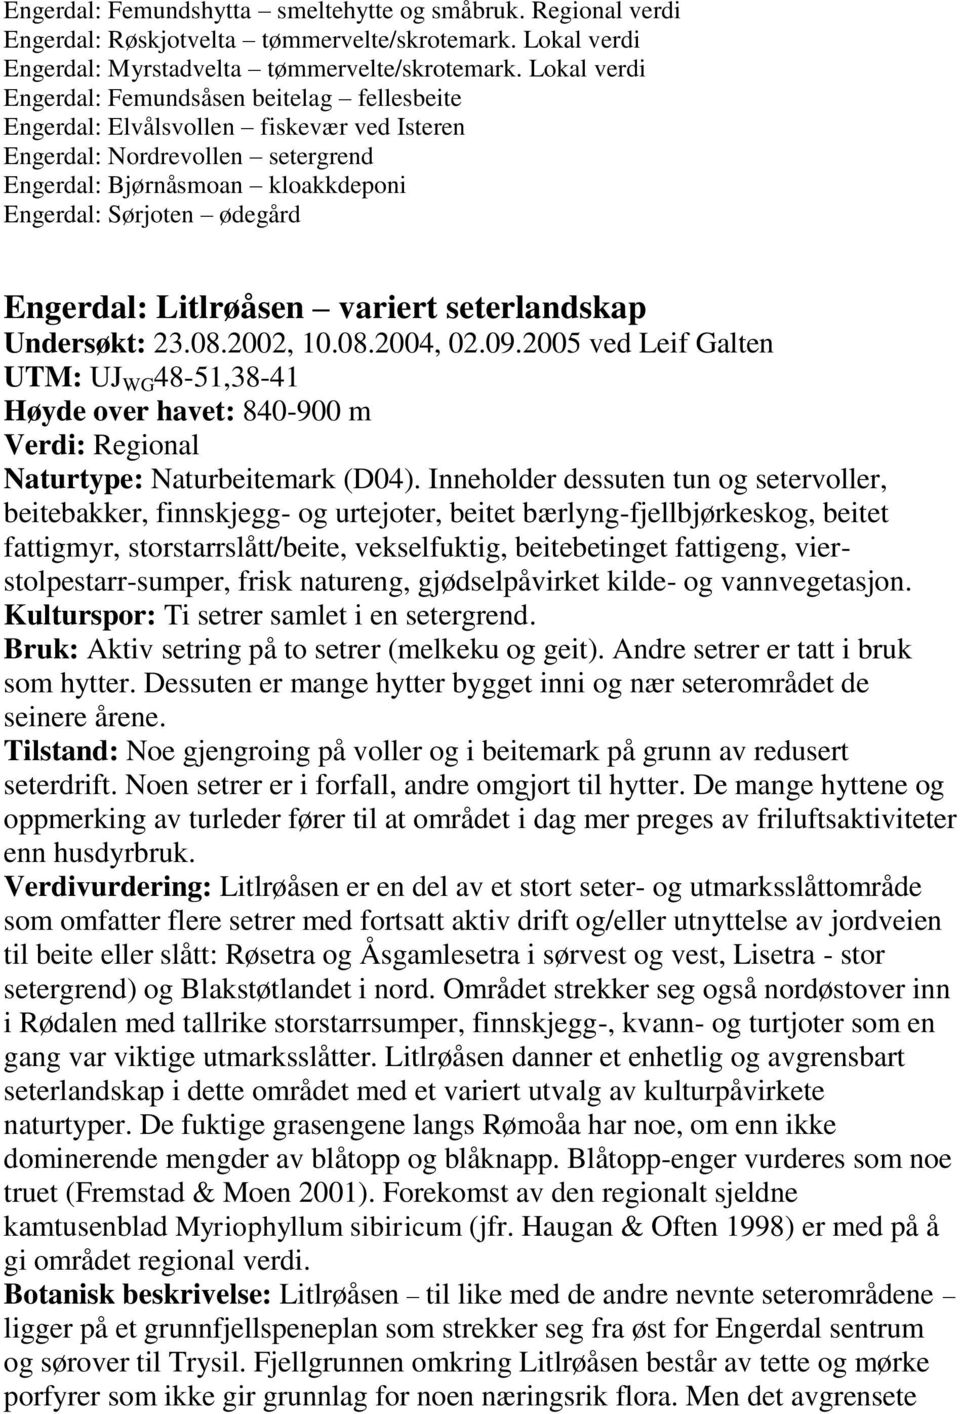 Engerdal: Litlrøåsen variert seterlandskap Undersøkt: 23.08.2002, 10.08.2004, 02.09.